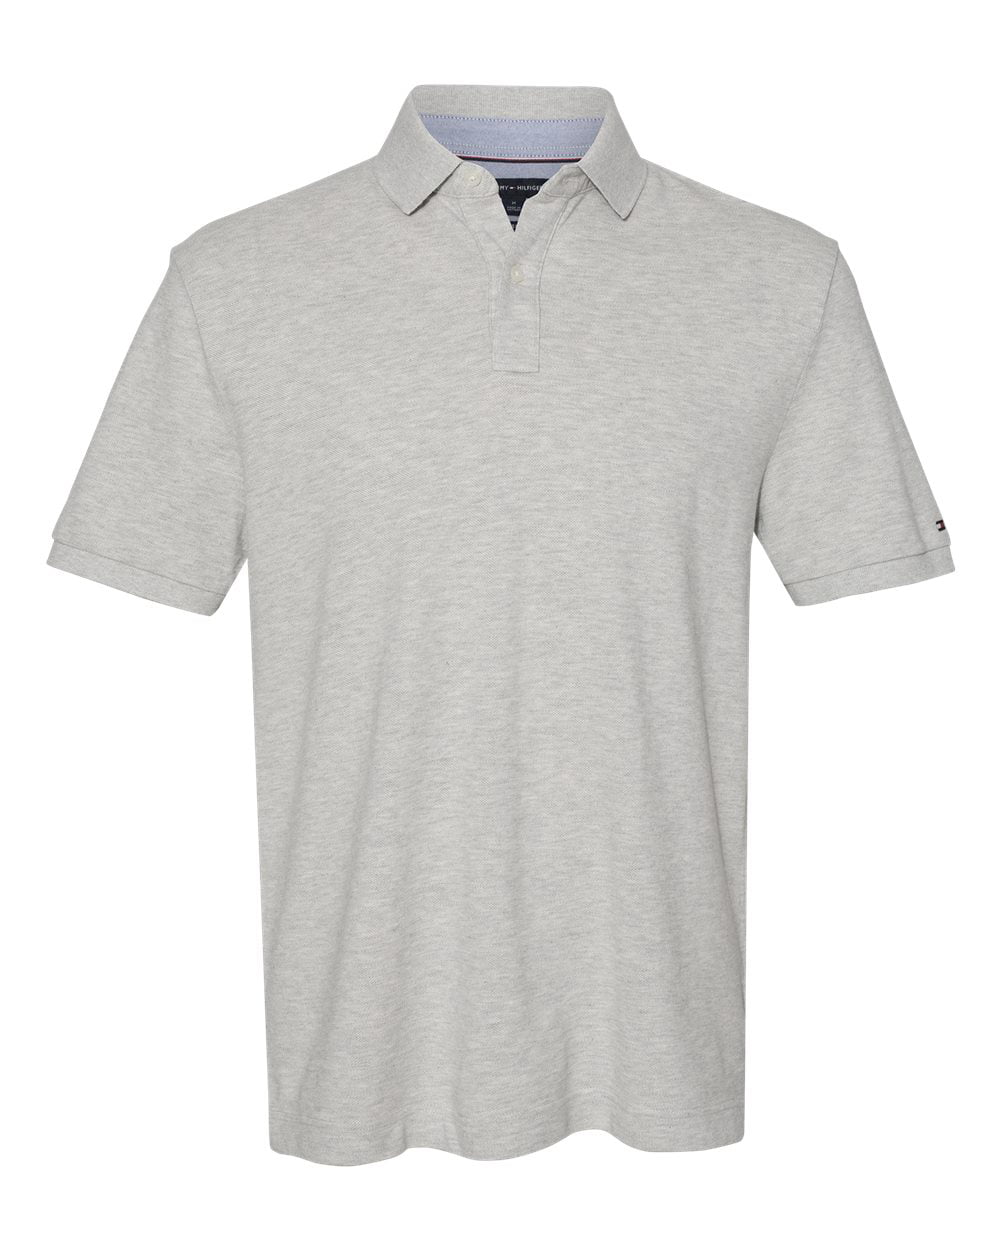 Boys Wrangler Premium Gray Heather Polo Shirt NEW NWT 